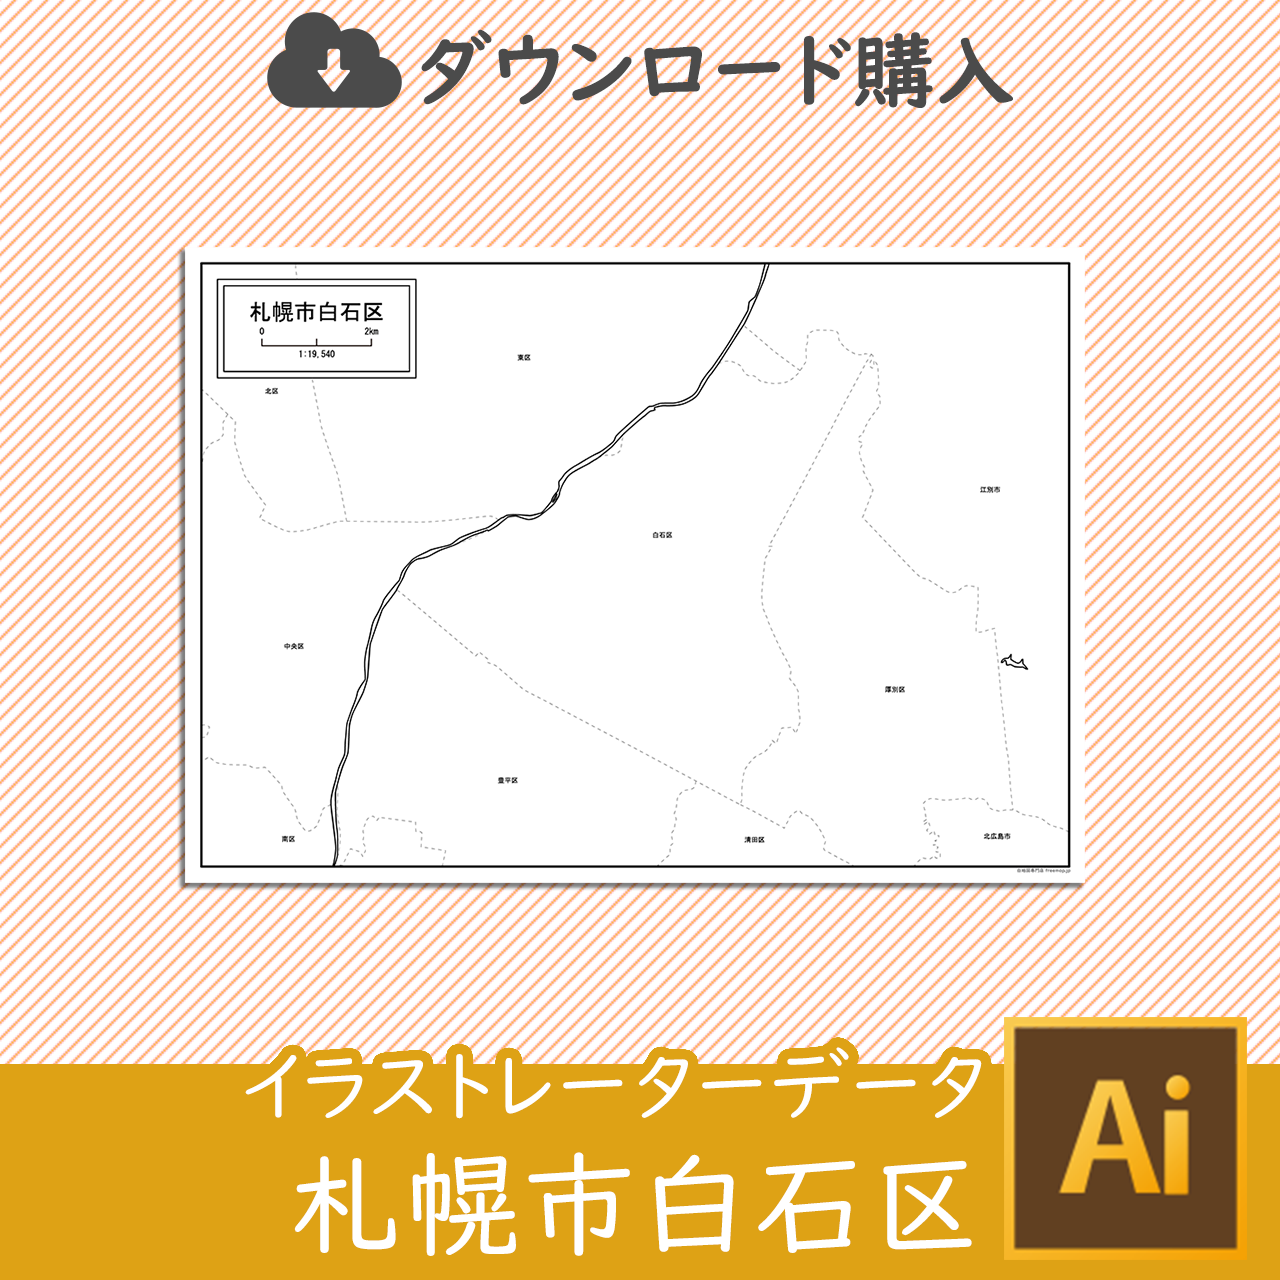 札幌市白石区のaiデータのサムネイル画像